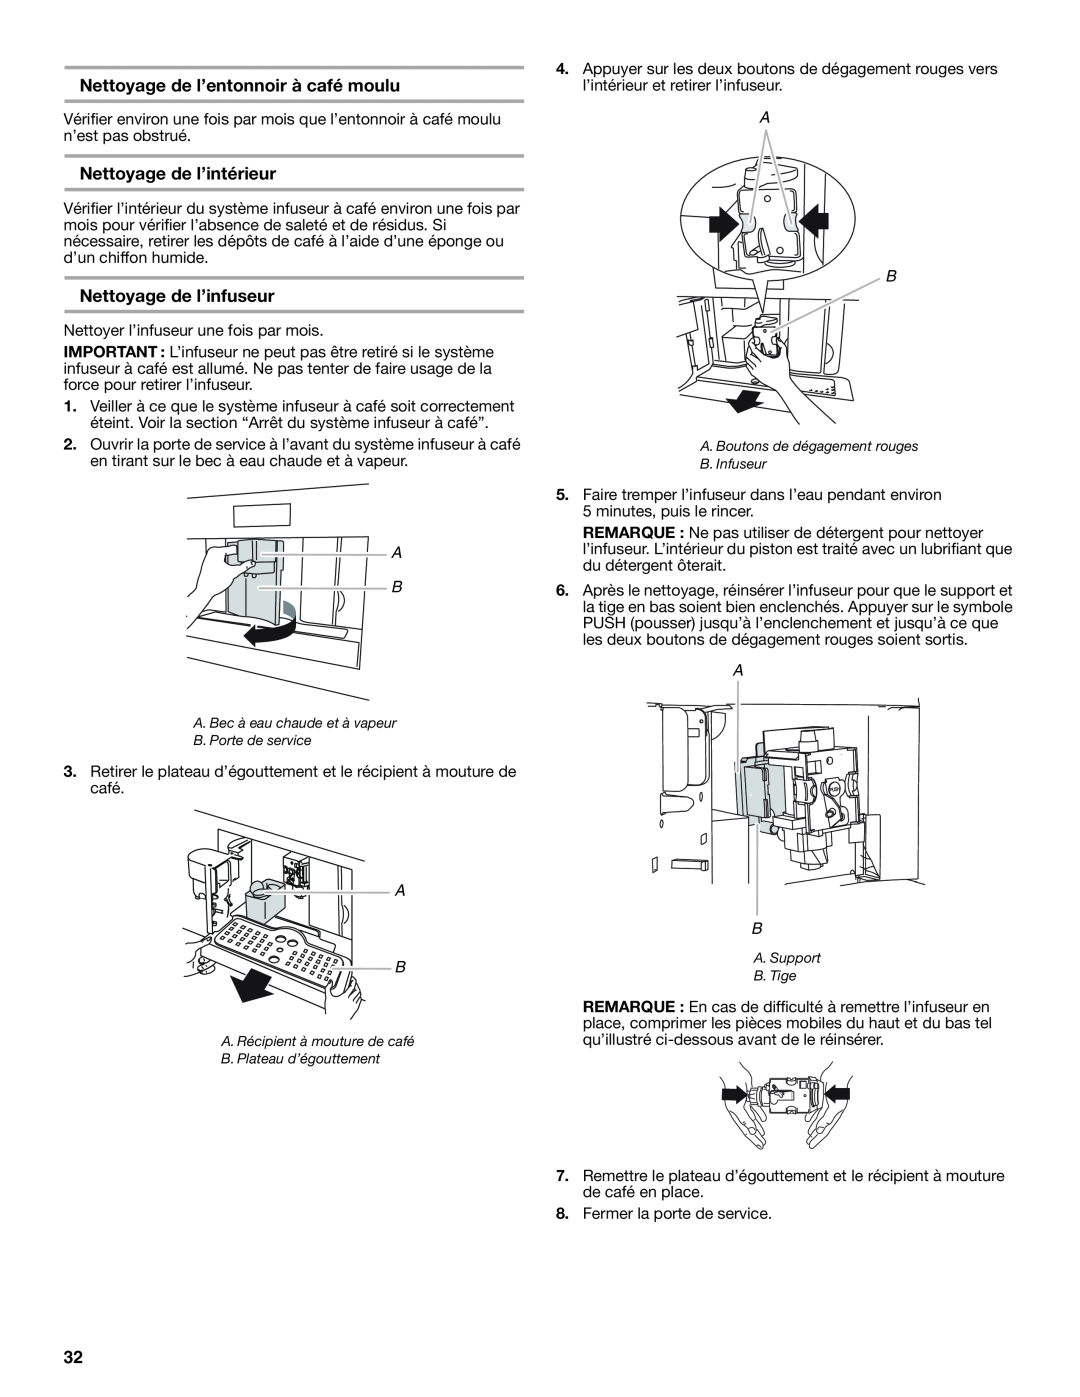 Jenn-Air JBC7624BS manual Nettoyage de l’entonnoir à café moulu, Nettoyage de l’intérieur, Nettoyage de l’infuseur 